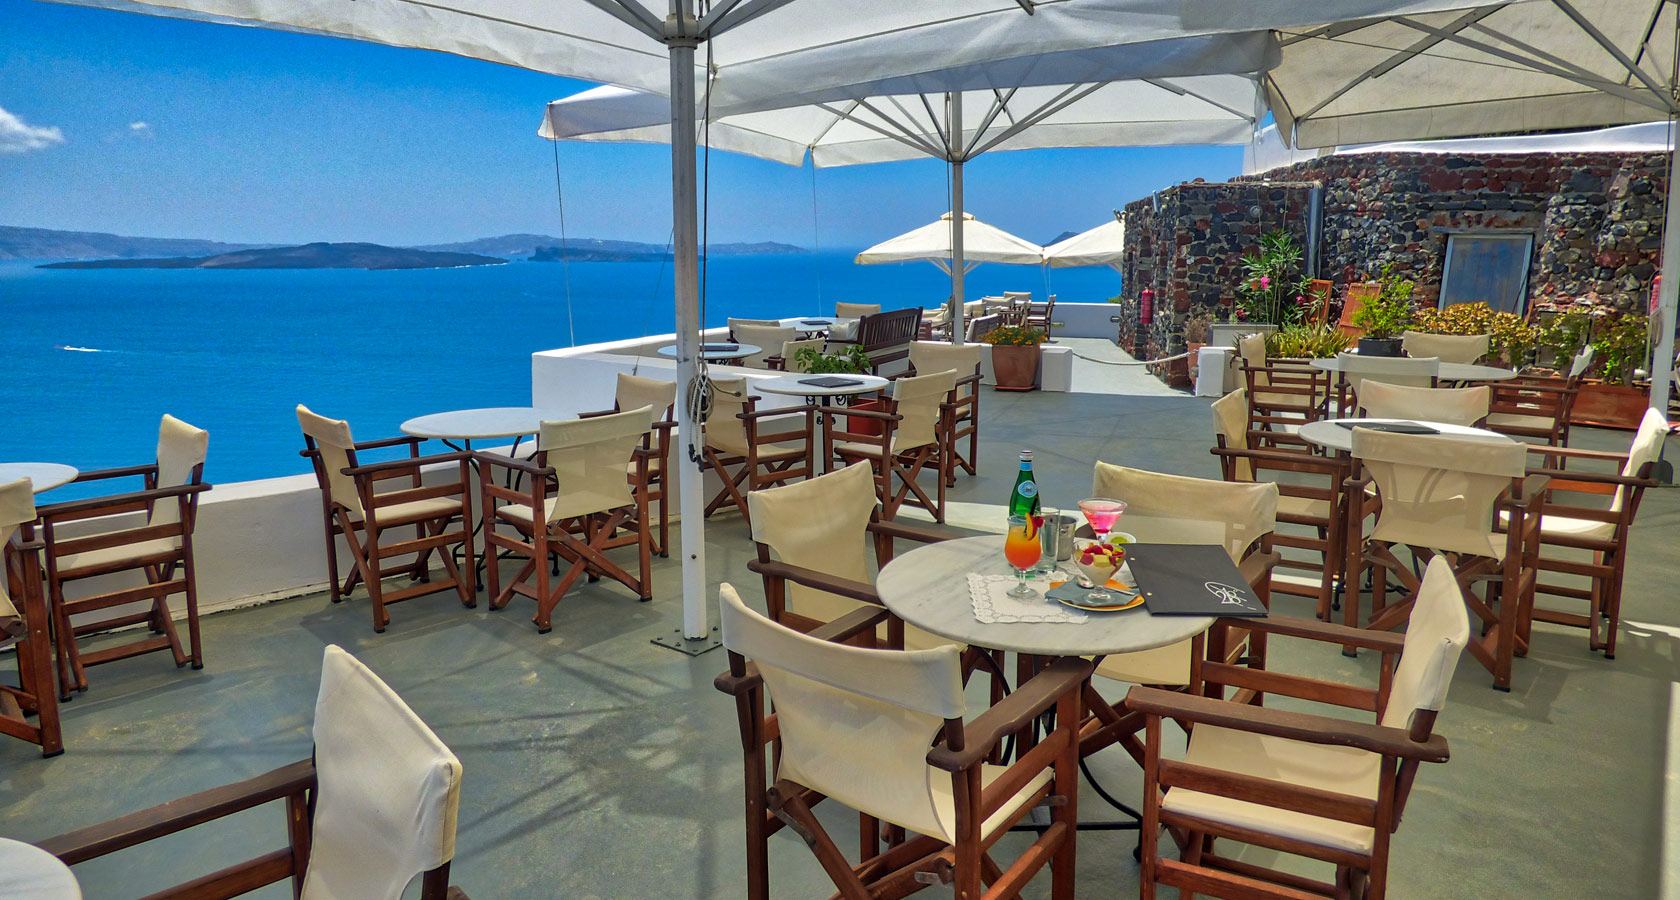 218° Santorini Café Restaurant in Oia – Magnificent Sea View